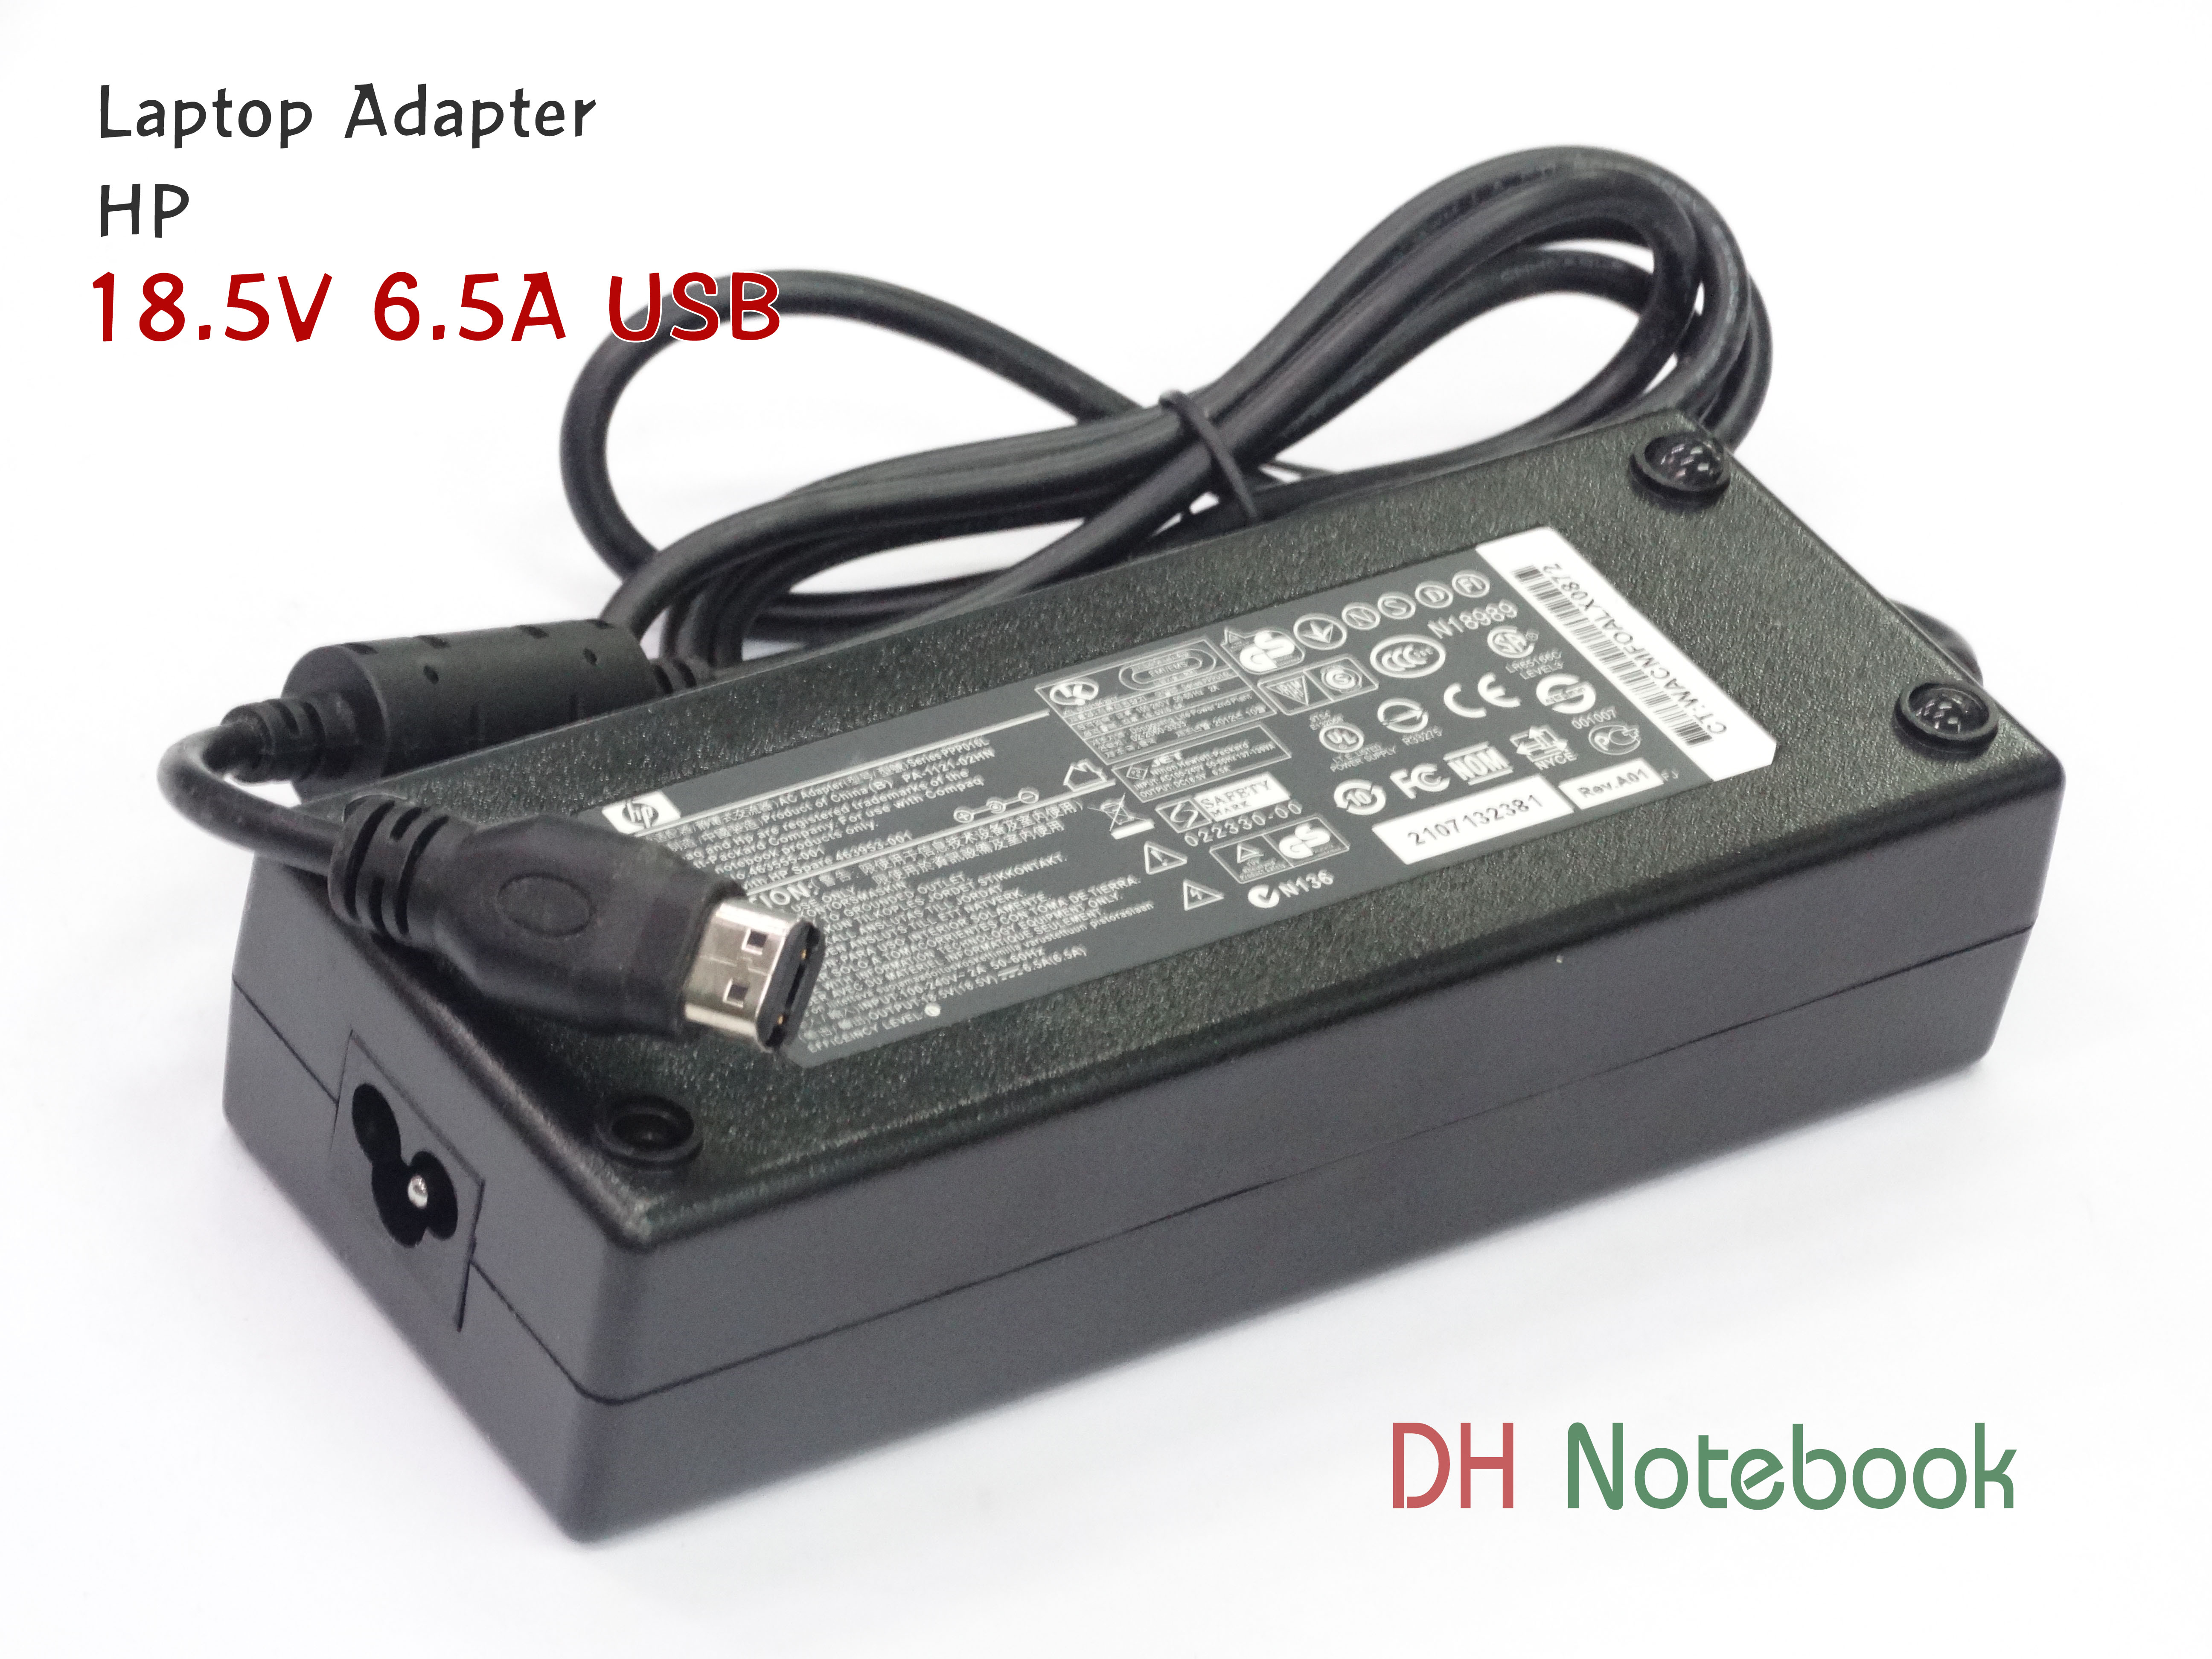 Adapter HP 18.5V 6.5A USB ของแท้